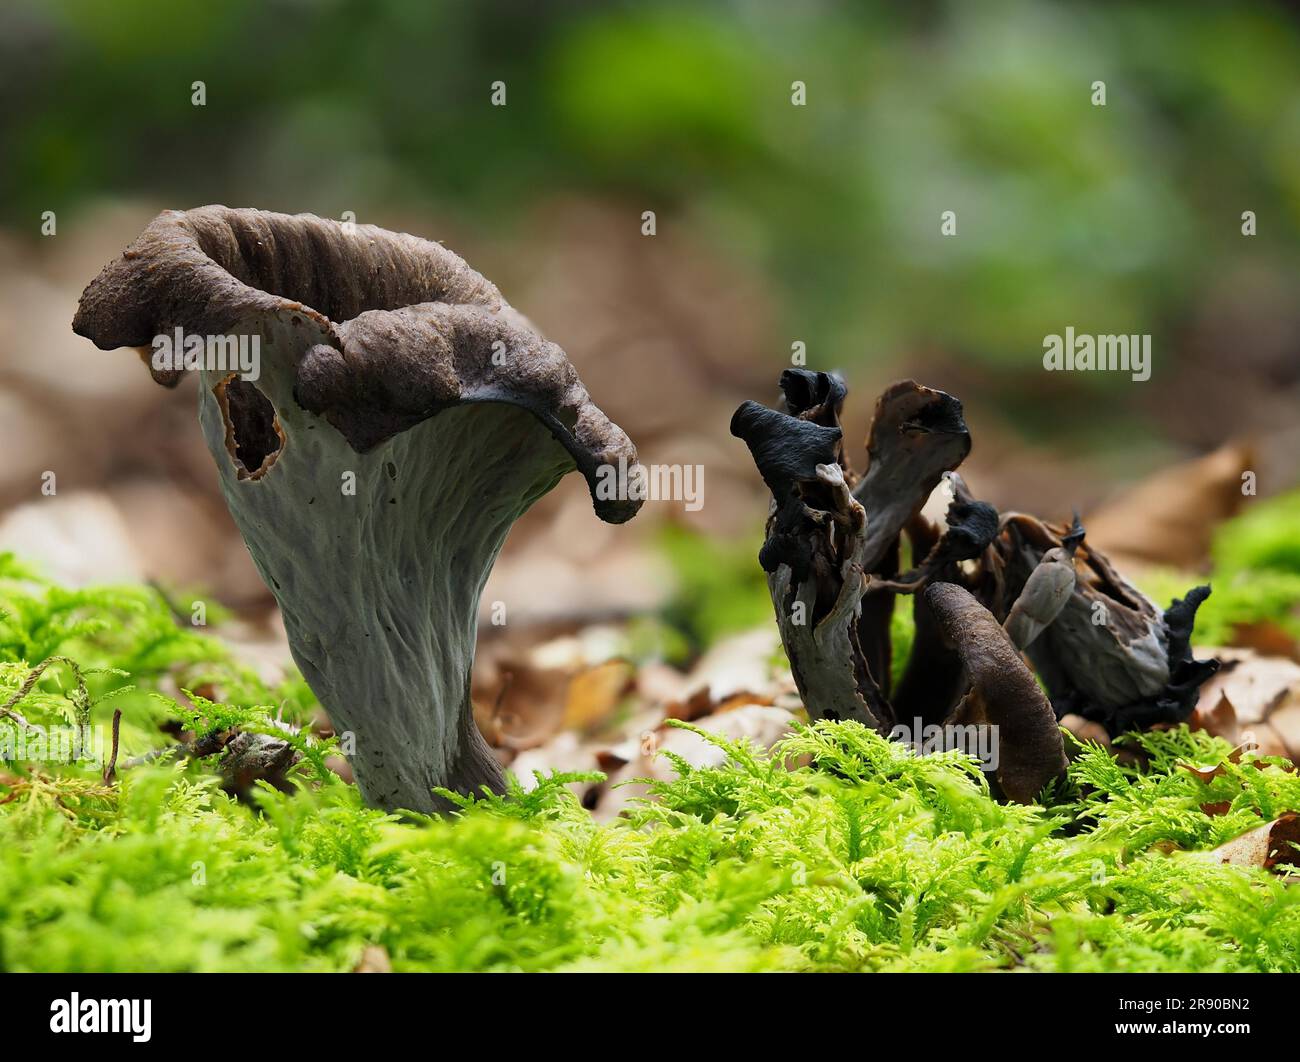 or horn of plenty, is an edible mushroom. It is also known as the black chanterelle (Craterellus cornucopioides), black trumpet, trompette de la mort Stock Photo